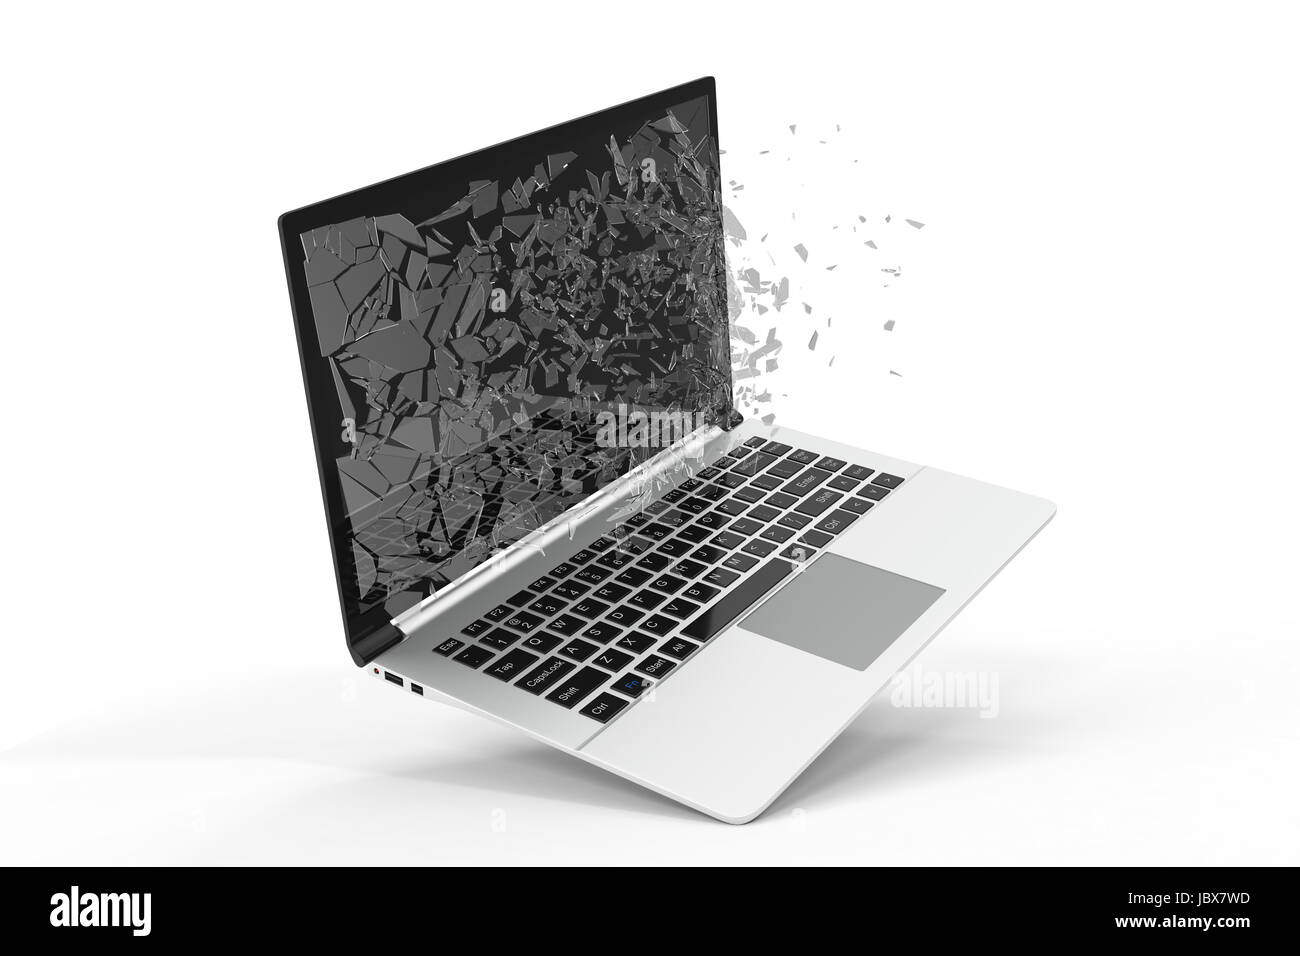 Đừng lo lắng khi laptop của bạn hỏng màn hình, vì trên thị trường bây giờ đã có nhiều sự lựa chọn về dịch vụ sửa chữa màn hình laptop chuyên nghiệp và uy tín. Với việc sửa chữa, chiếc laptop của bạn sẽ trở thành \